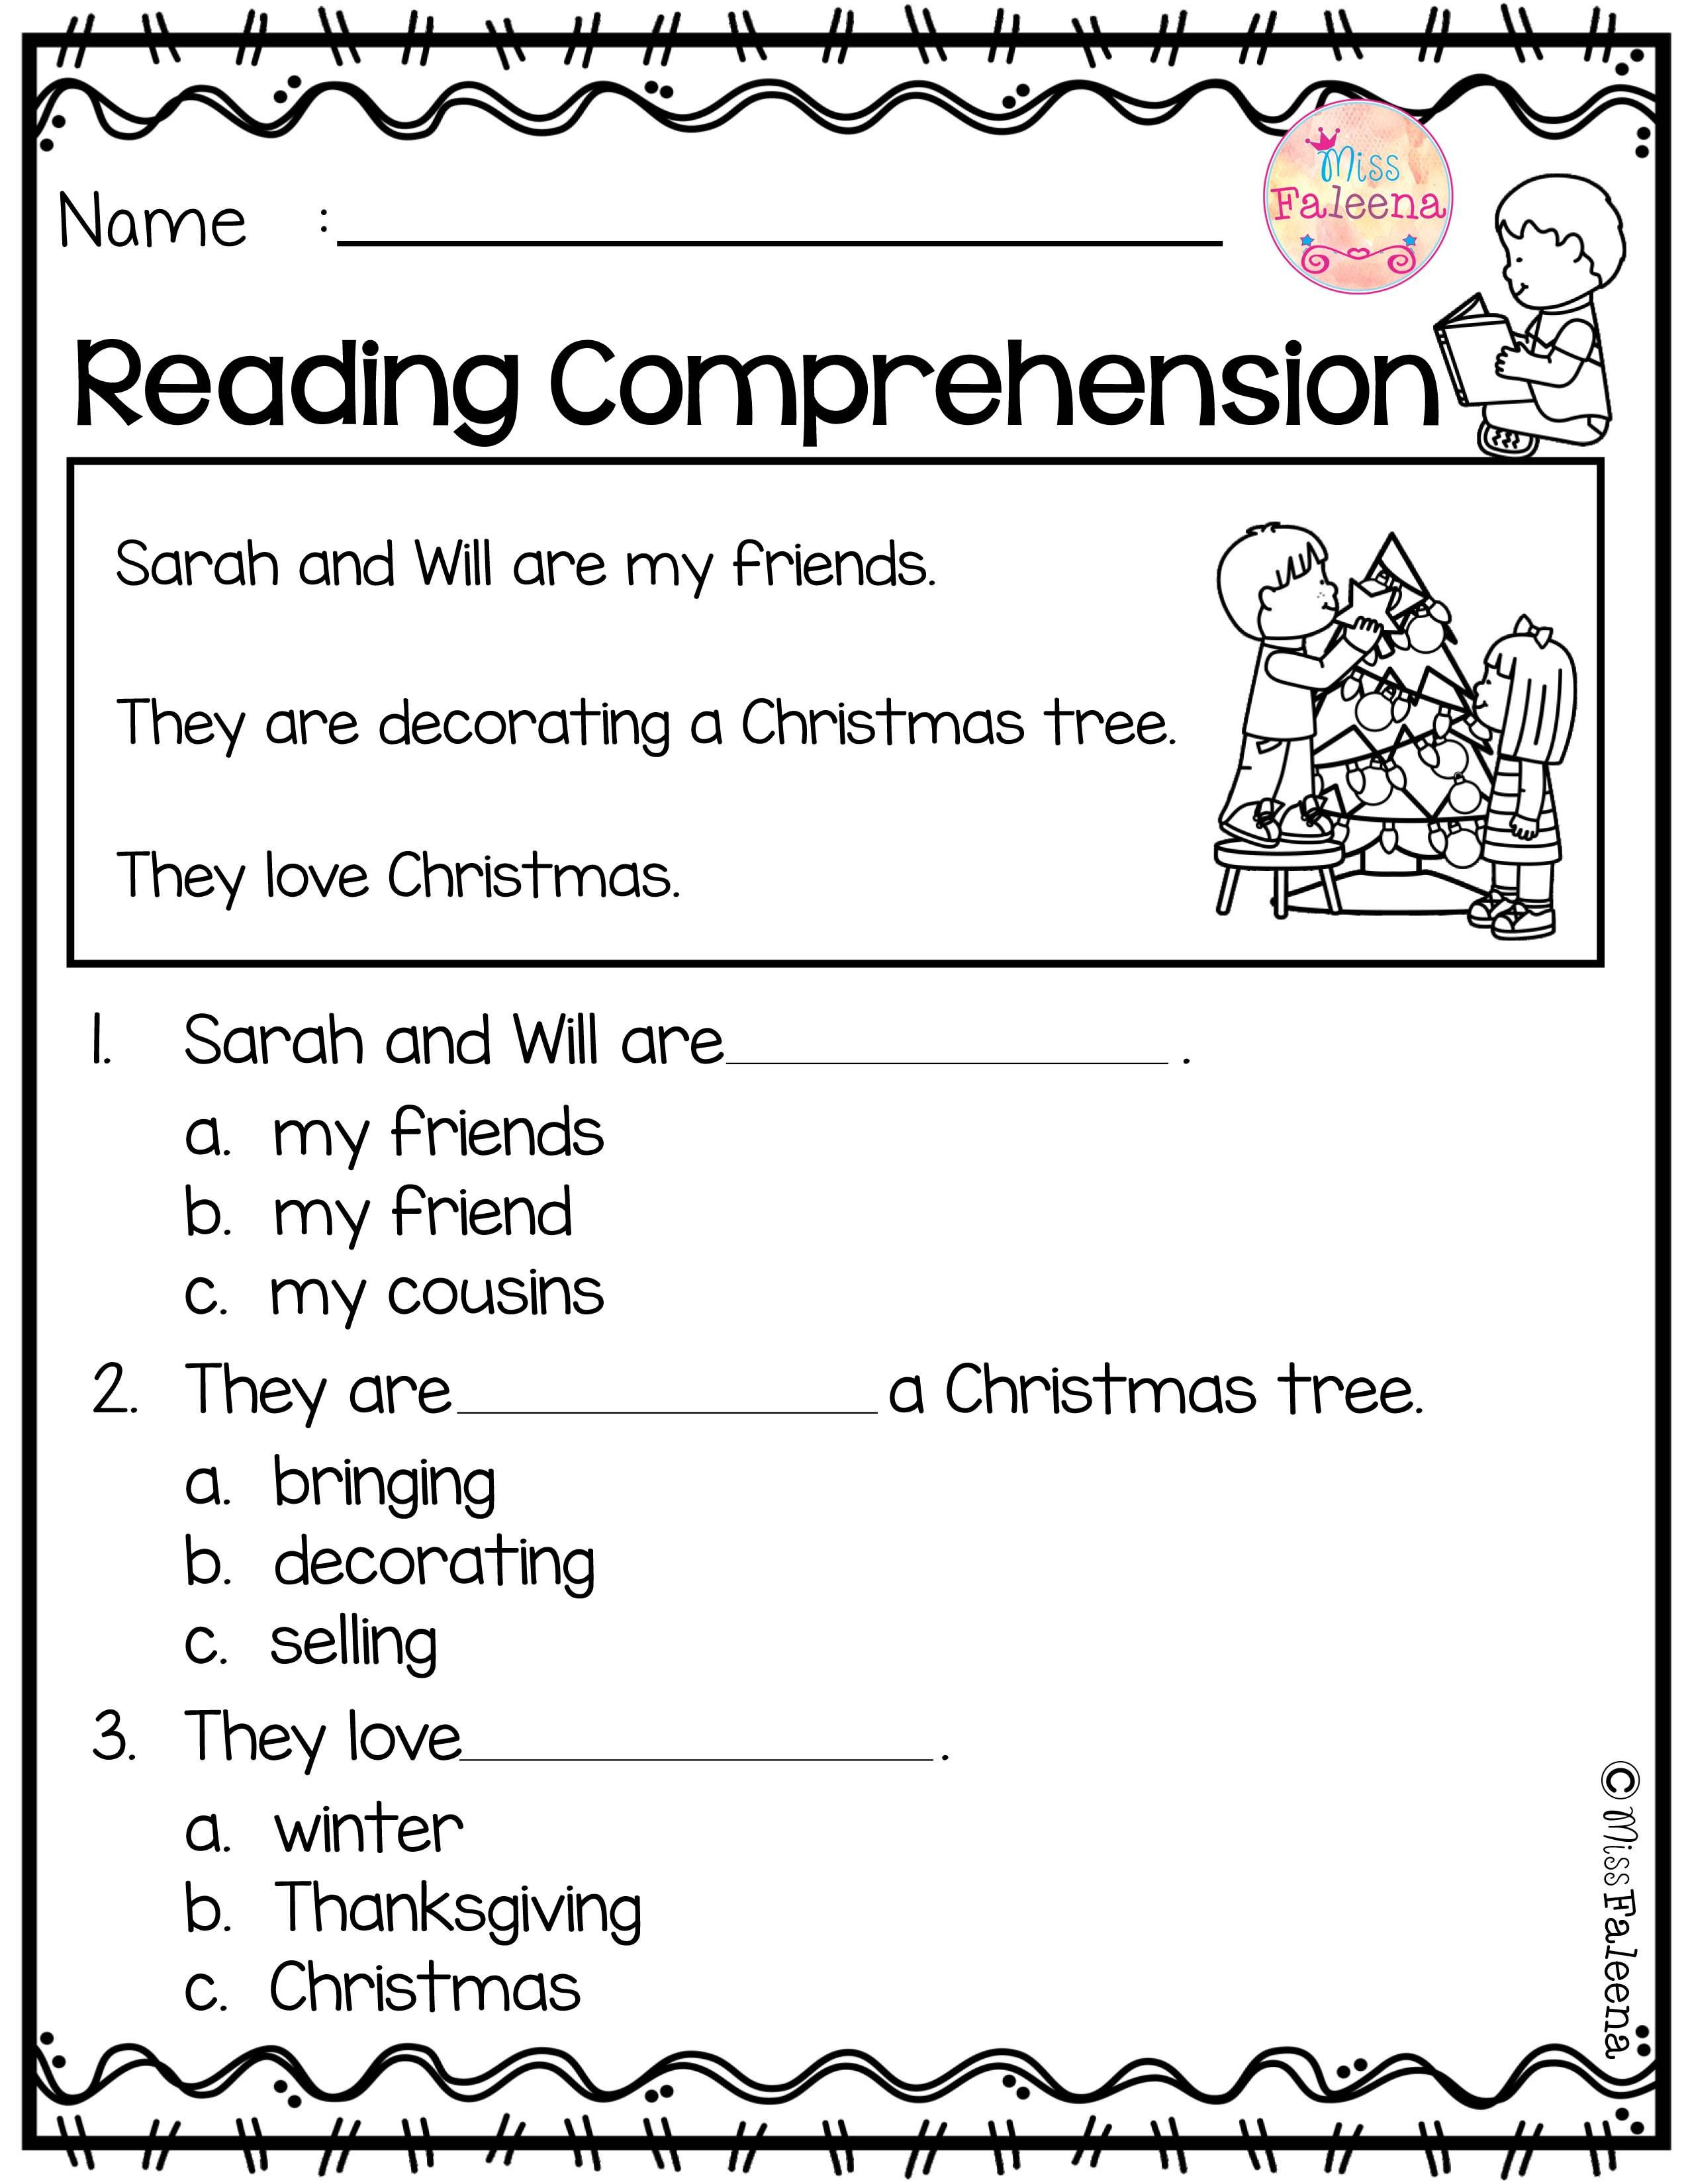 Comprehension Worksheets for Kindergarten December Reading Prehension is Suitable for Kindergarten